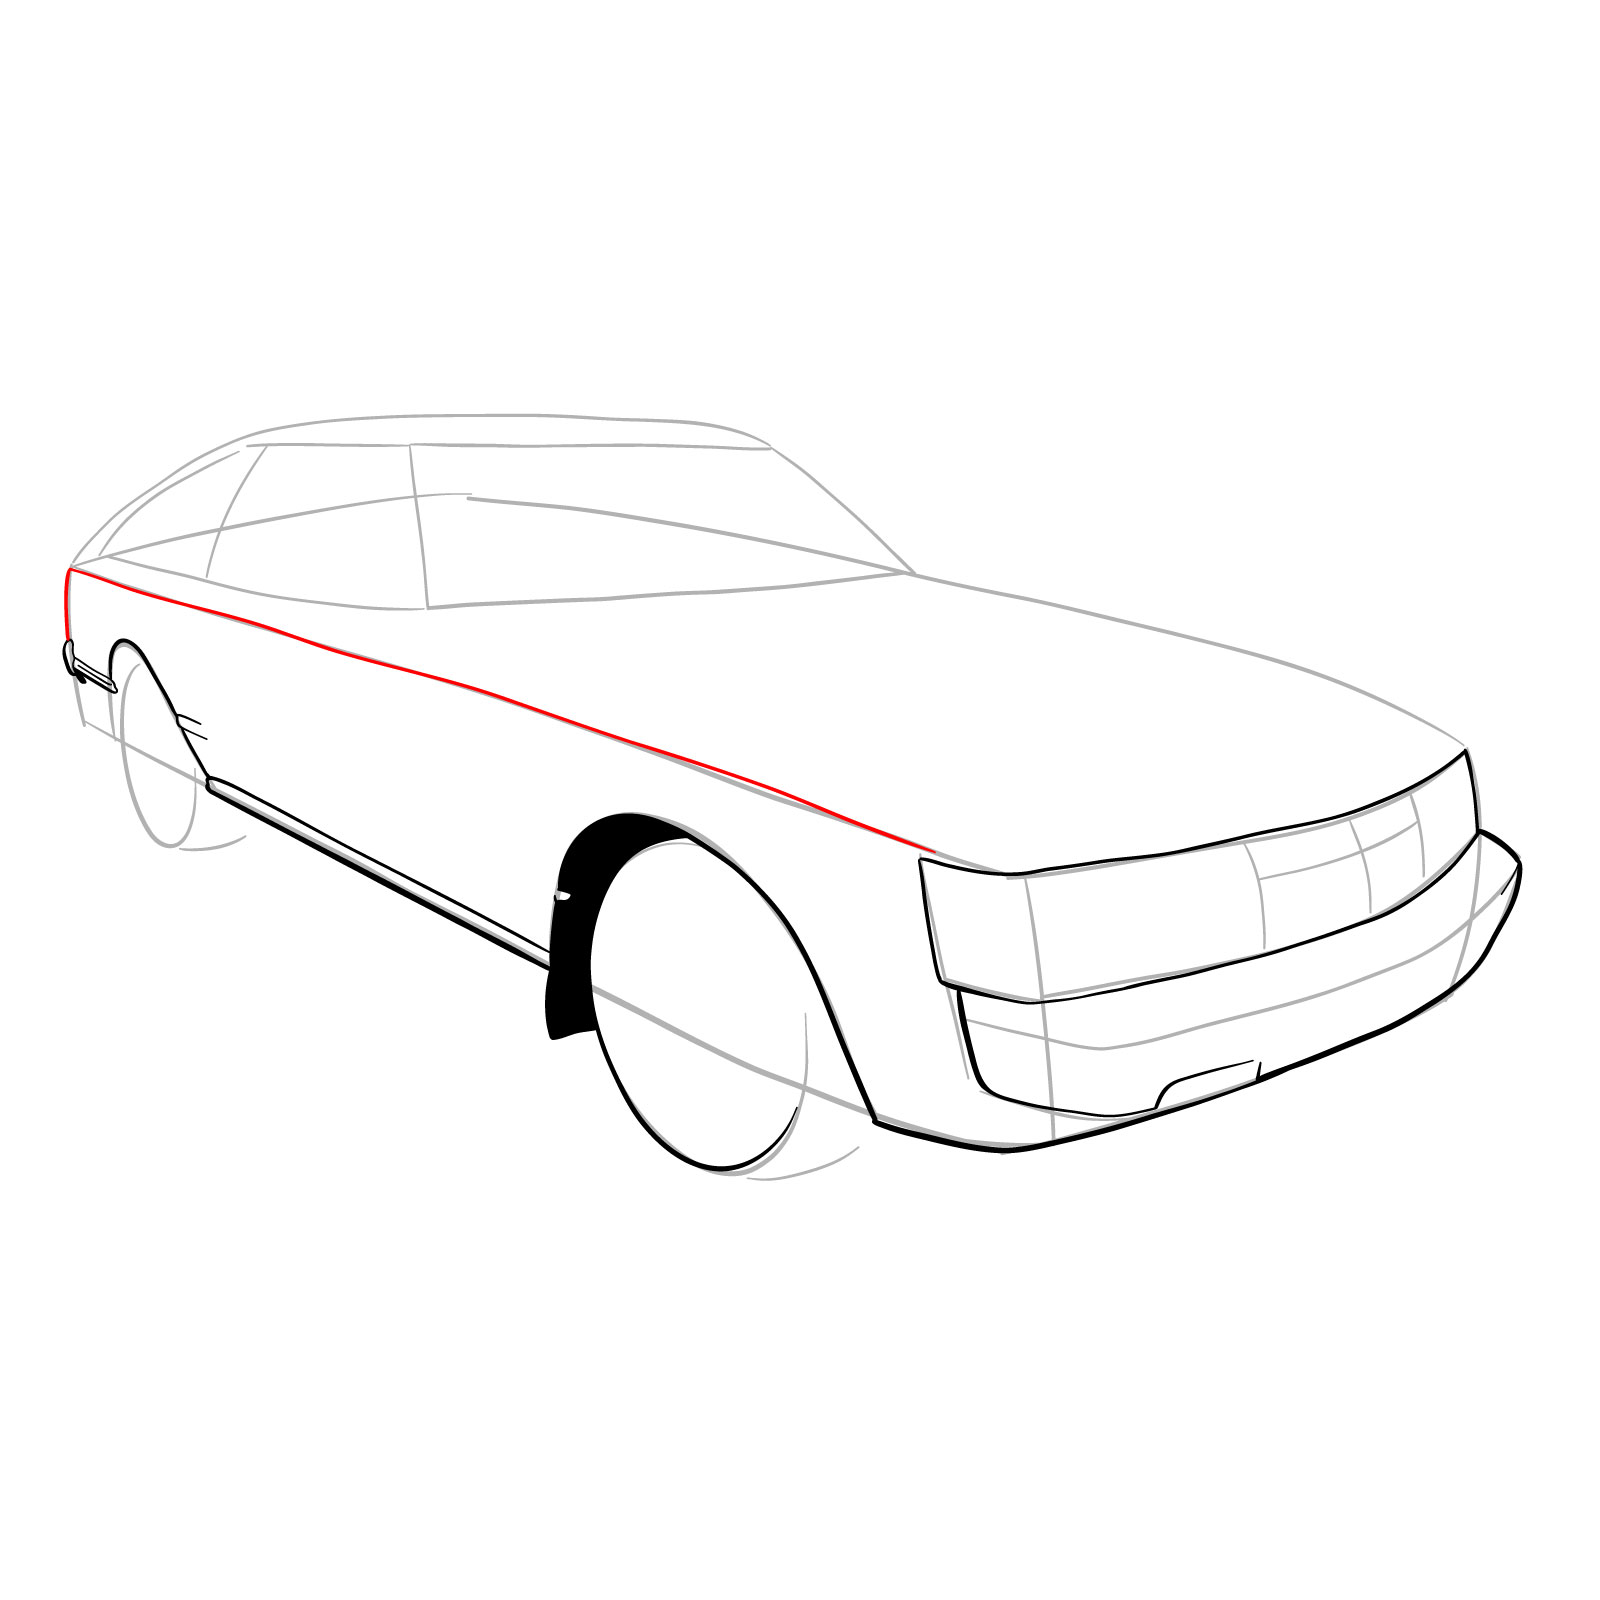 How to draw a 1979 Toyota Celica Supra Mk I Coupe - step 11